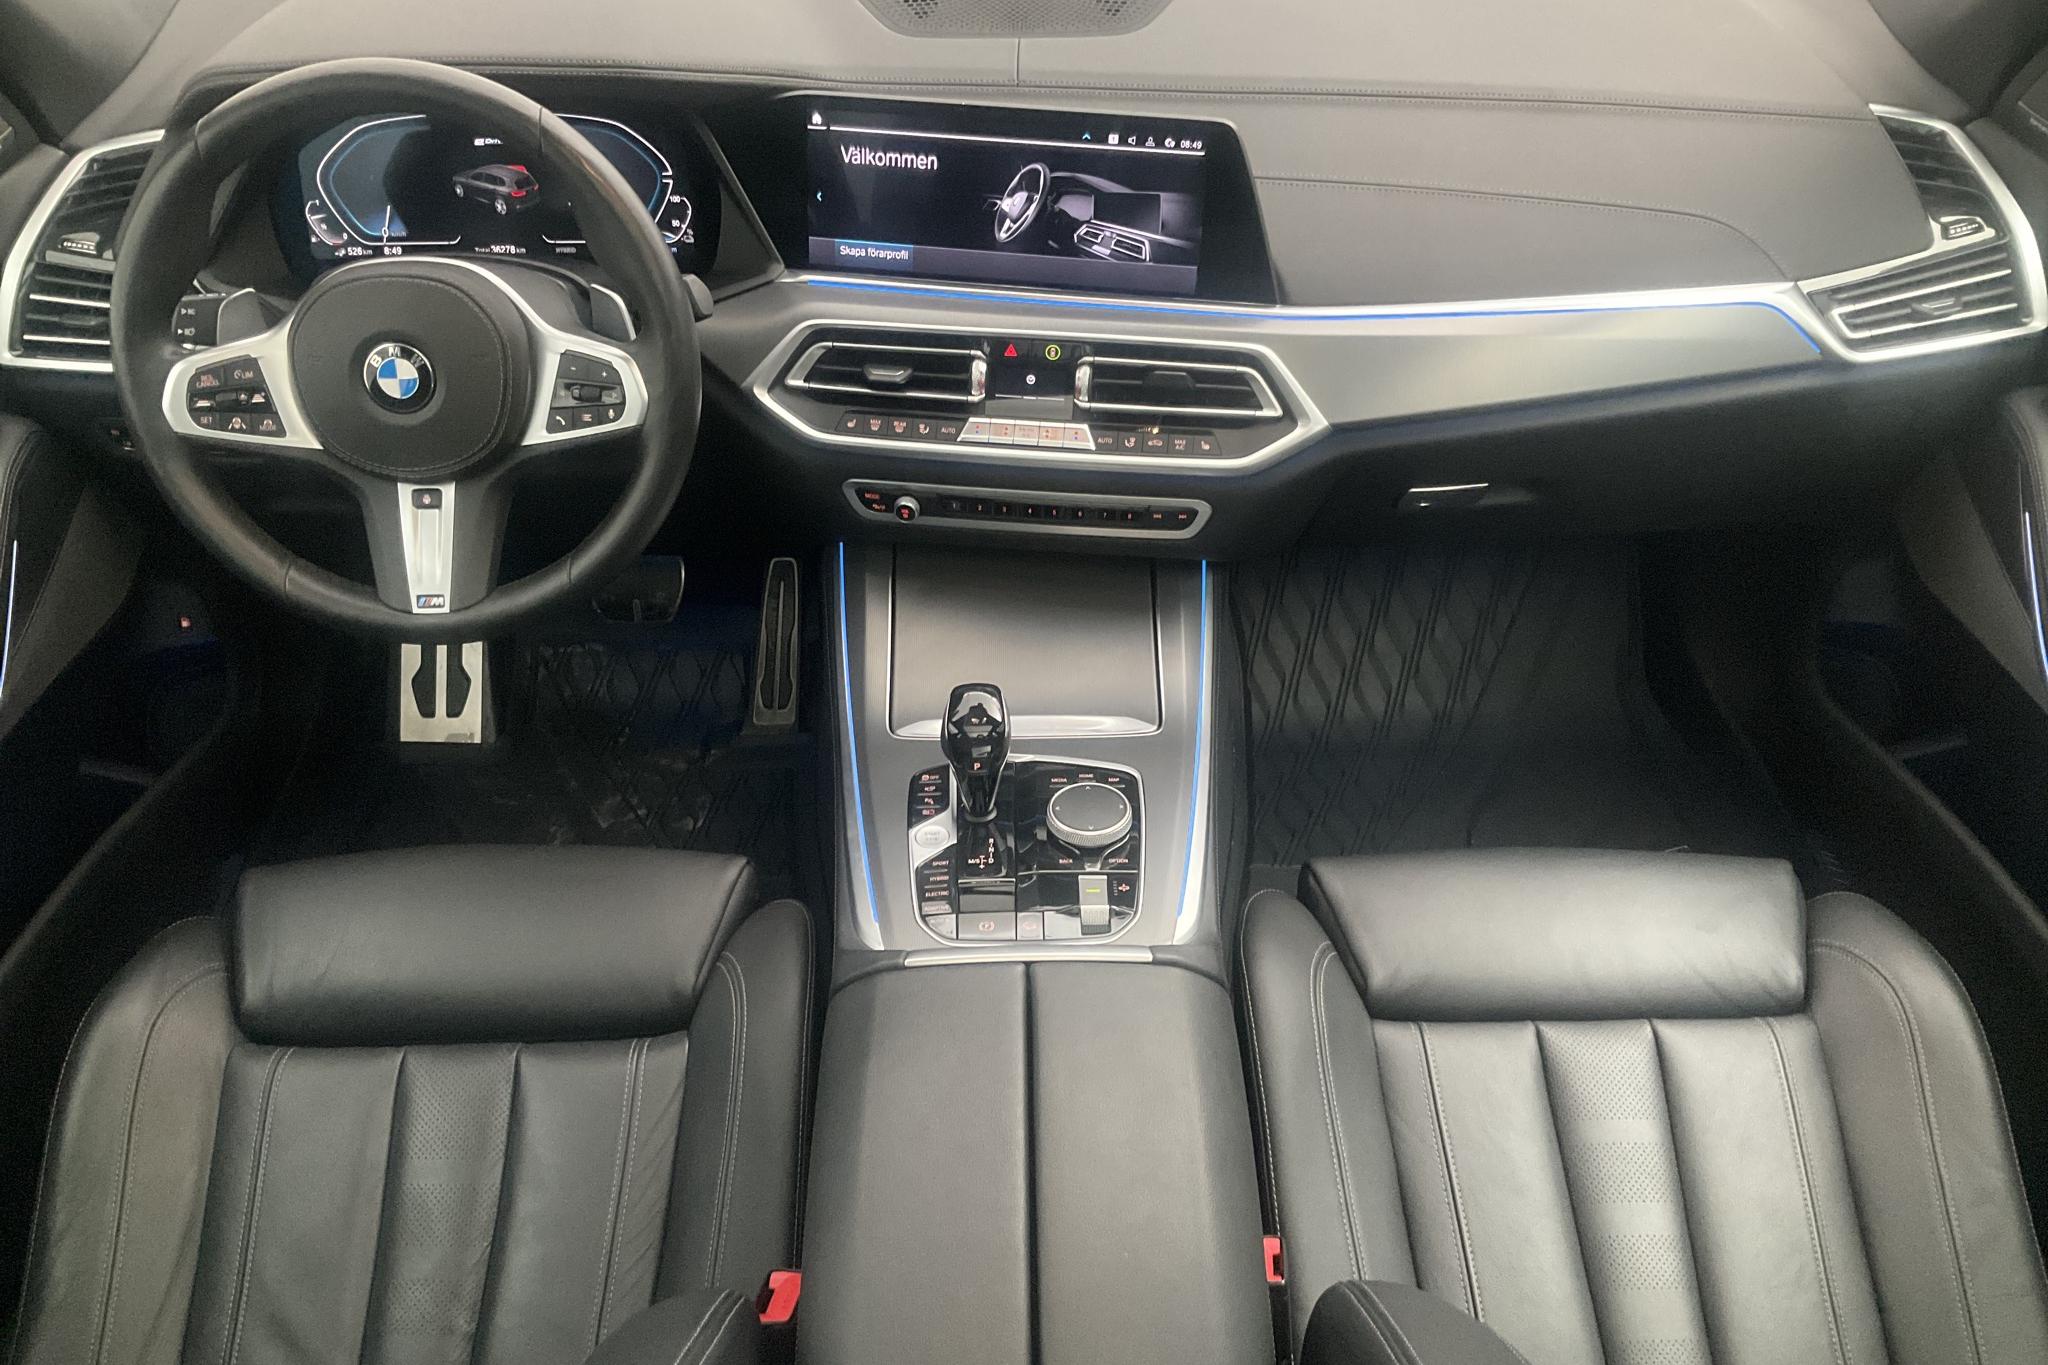 BMW X5 xDrive45e, G05 (394hk) - 3 628 mil - Automat - svart - 2020